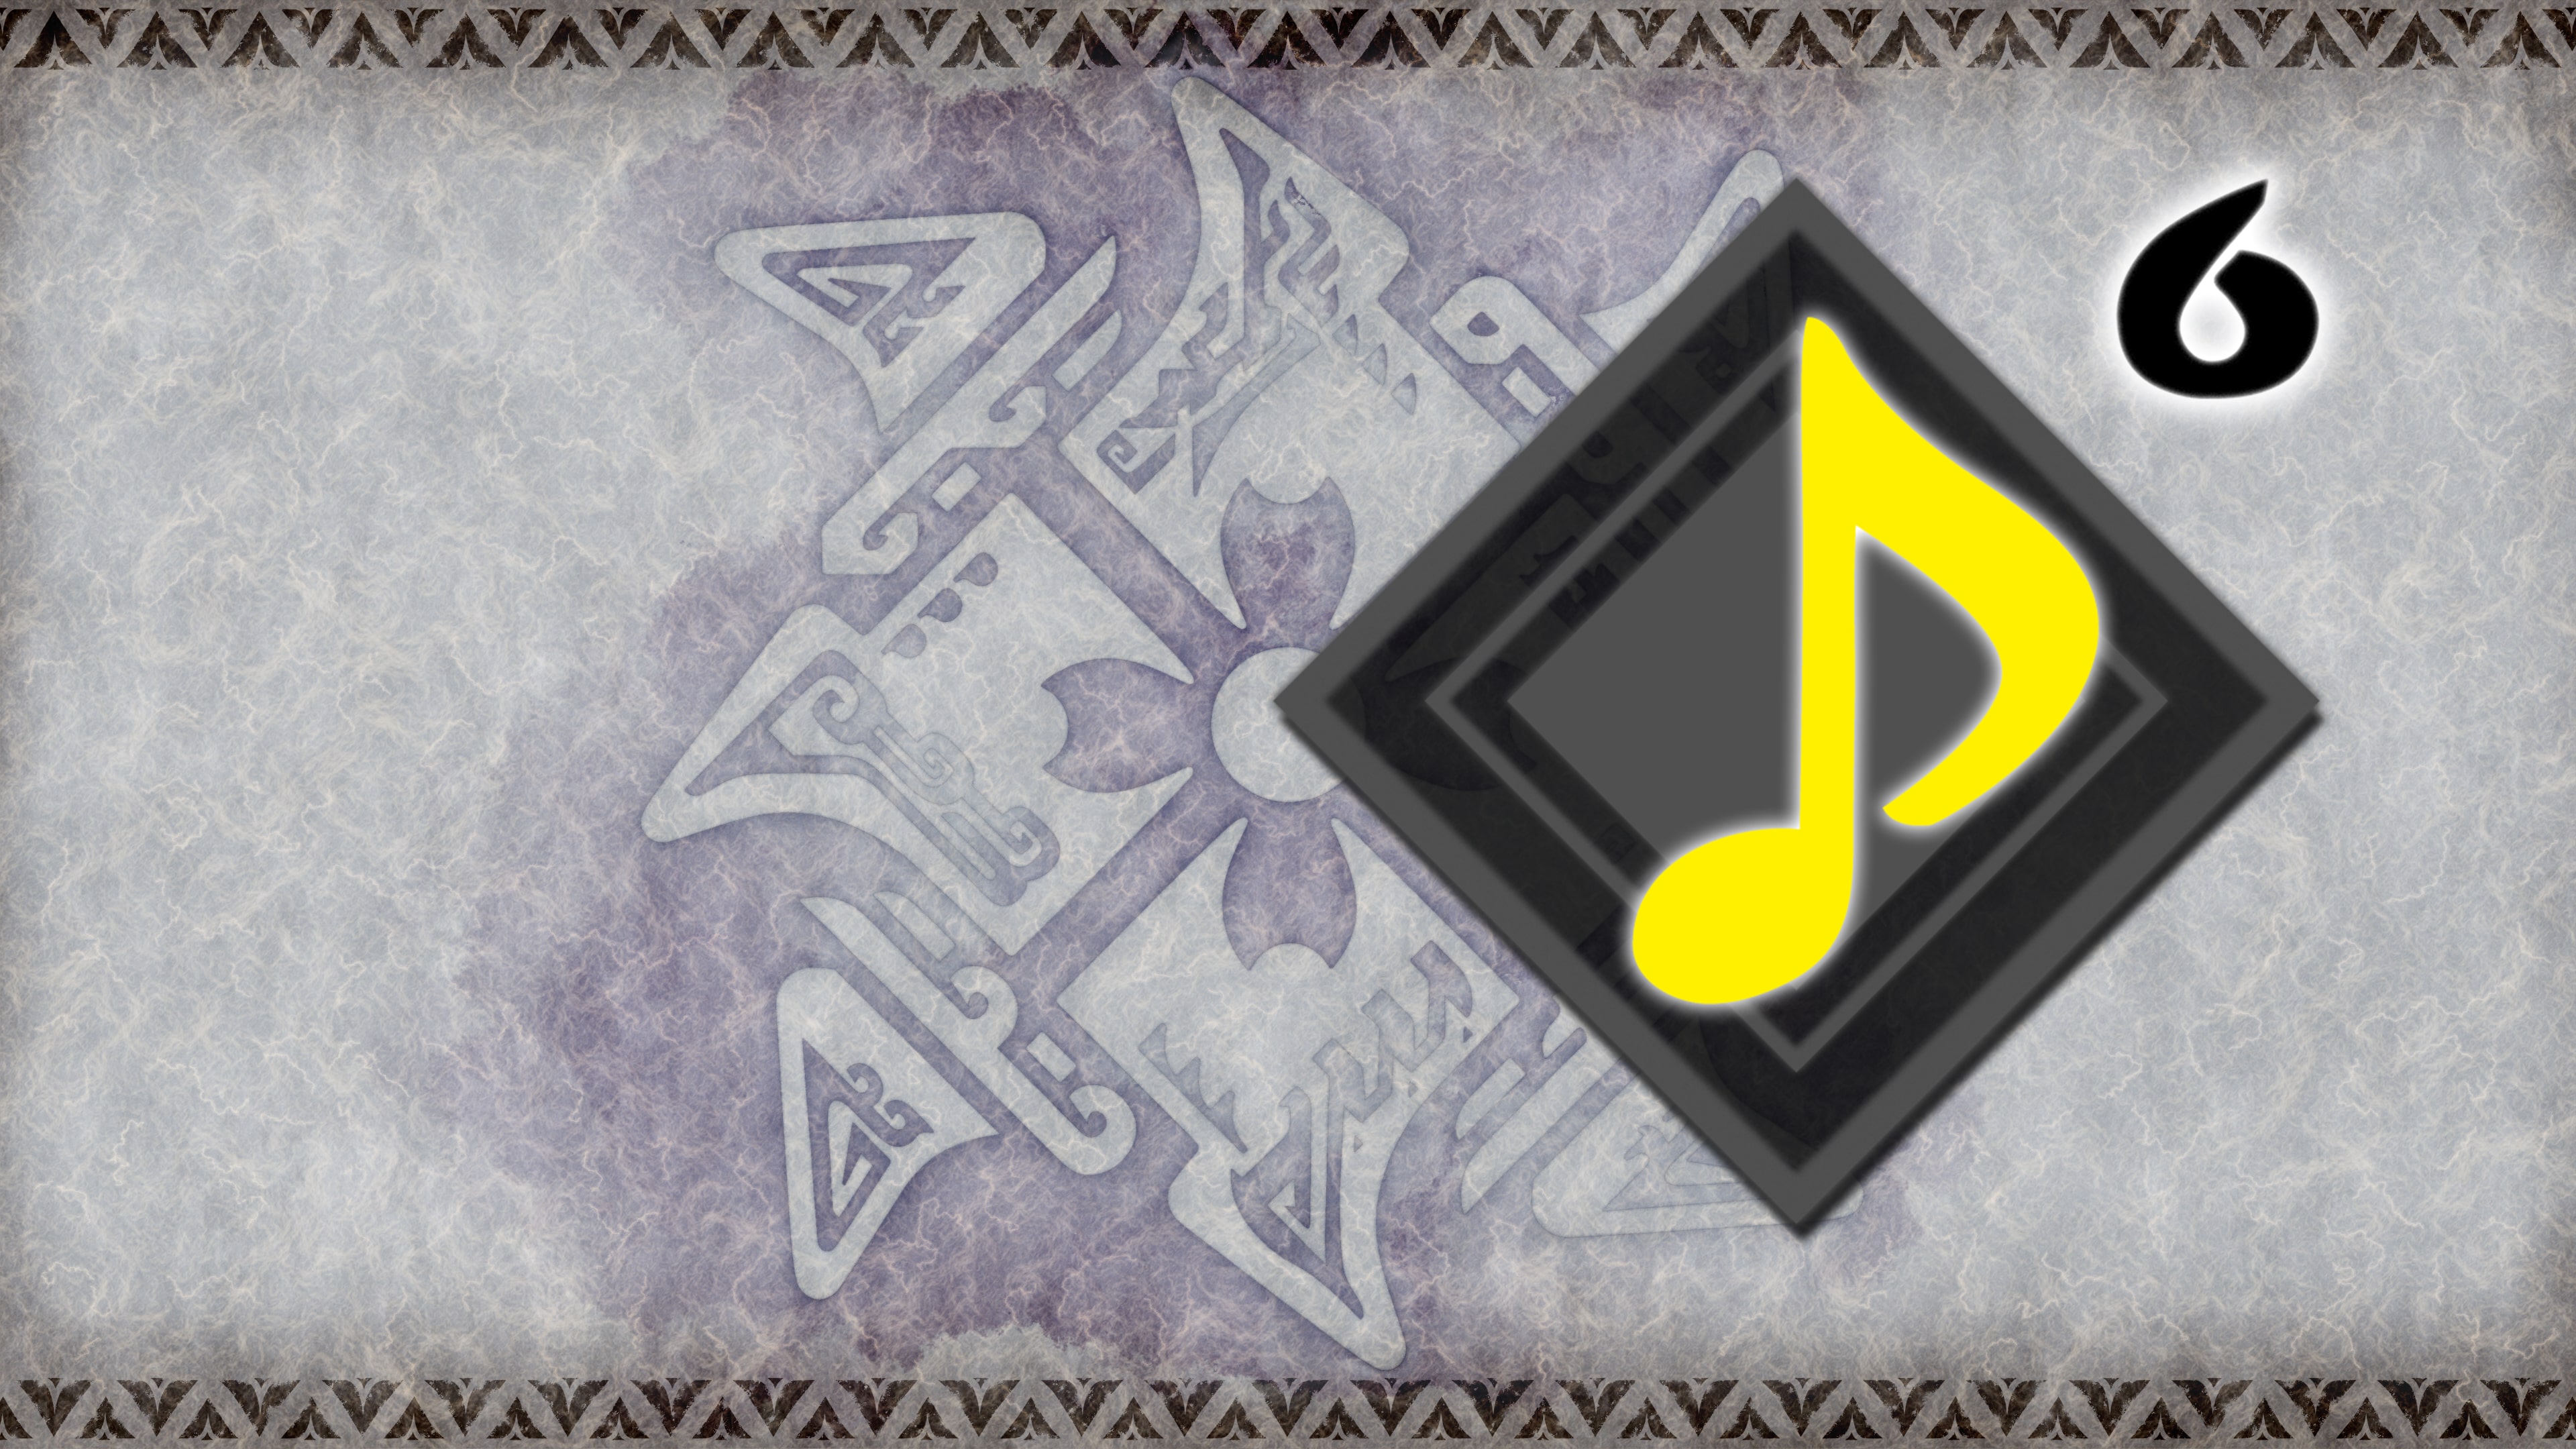 Monster Hunter Rise - Hintergrundmusik: "Monster Music: Rock Version"